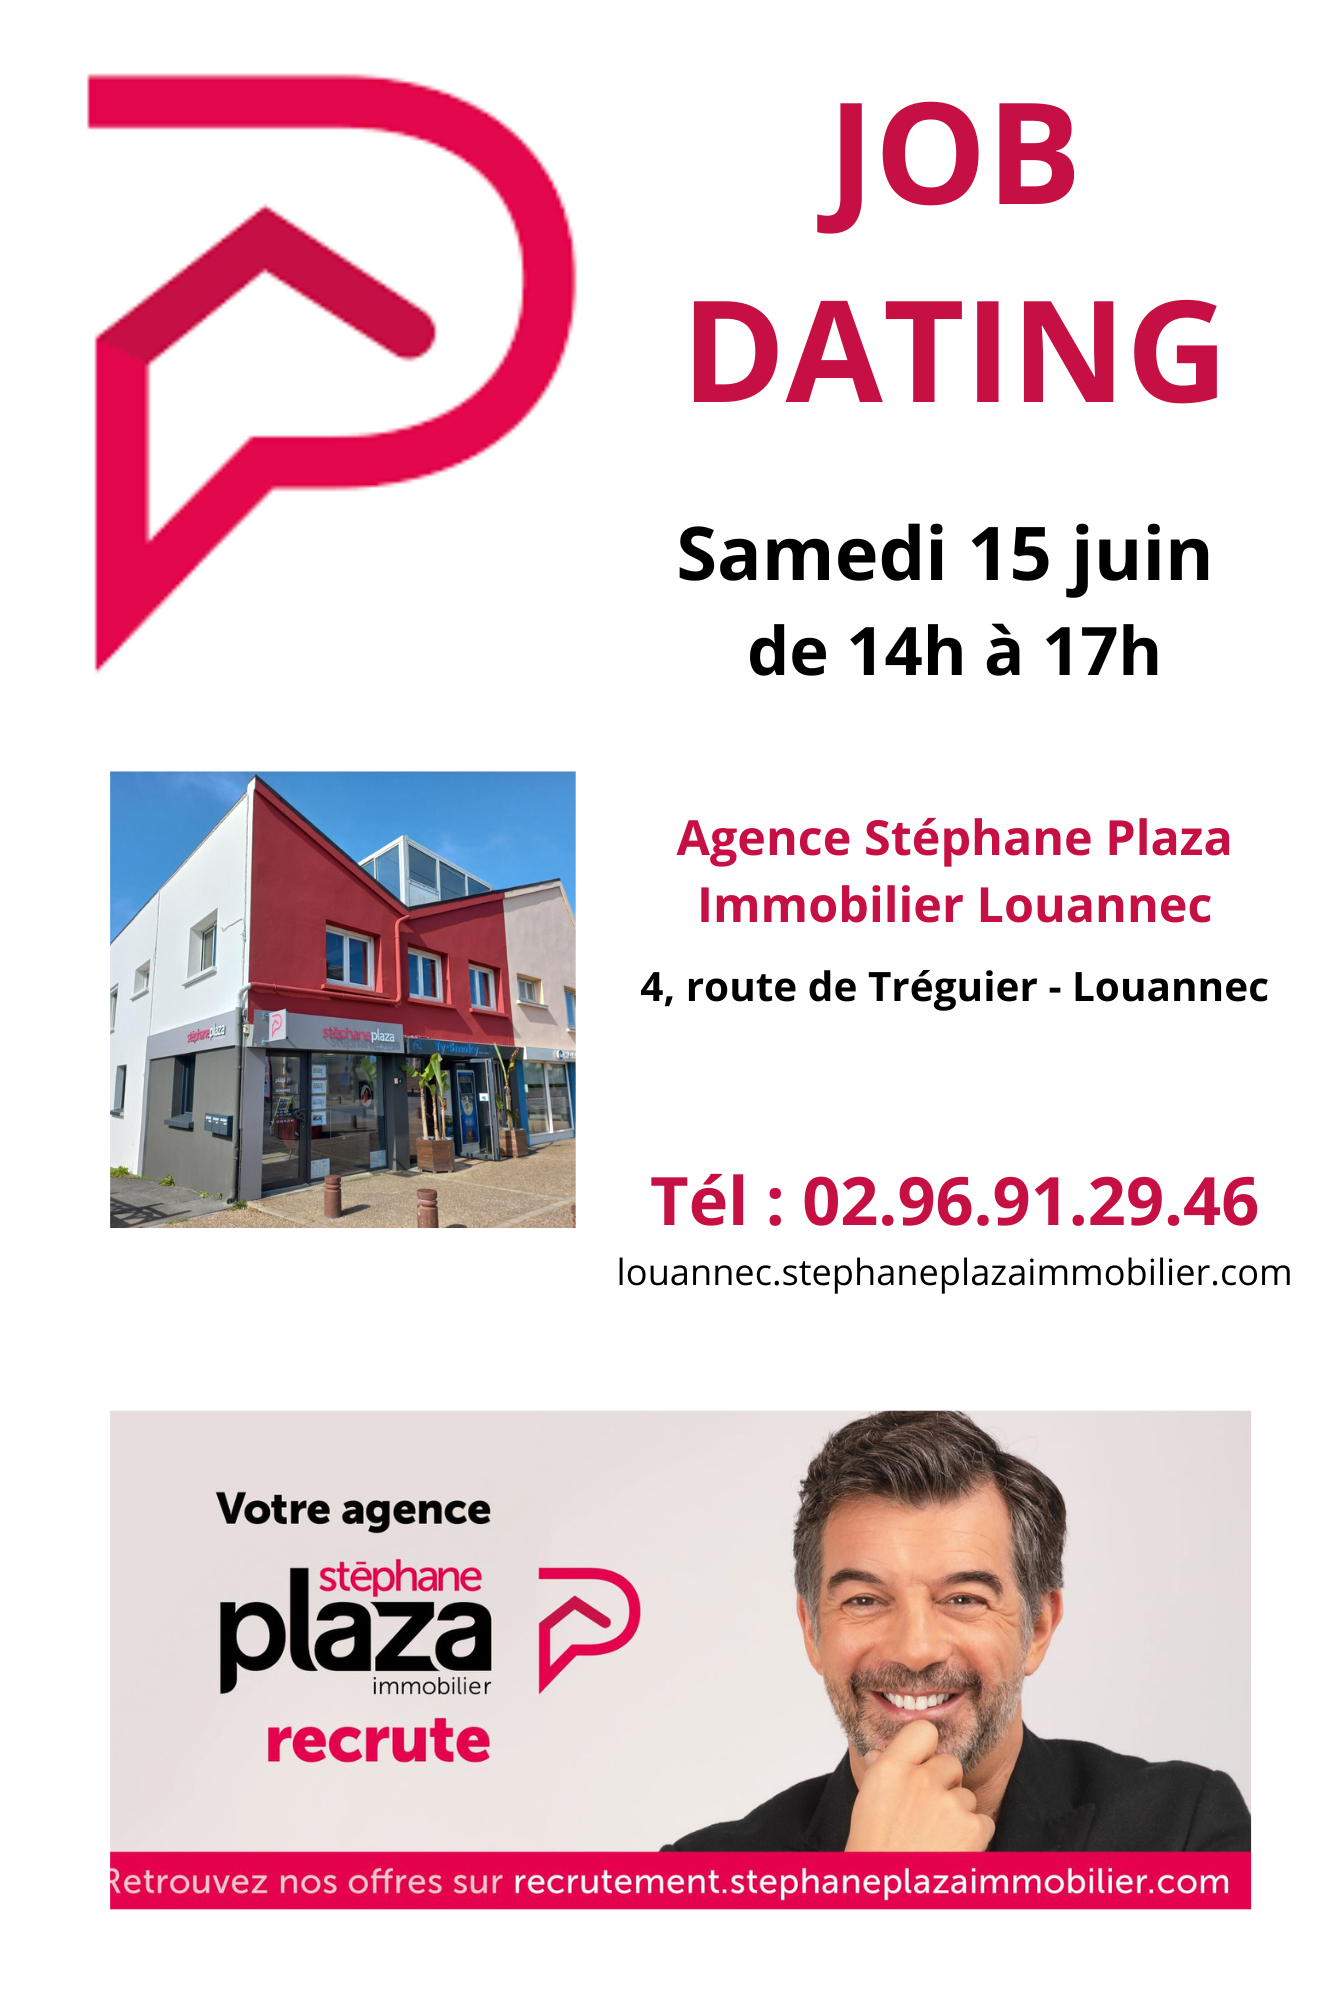 JOB DATING pour les agences Stéphane Plaza Immobilier